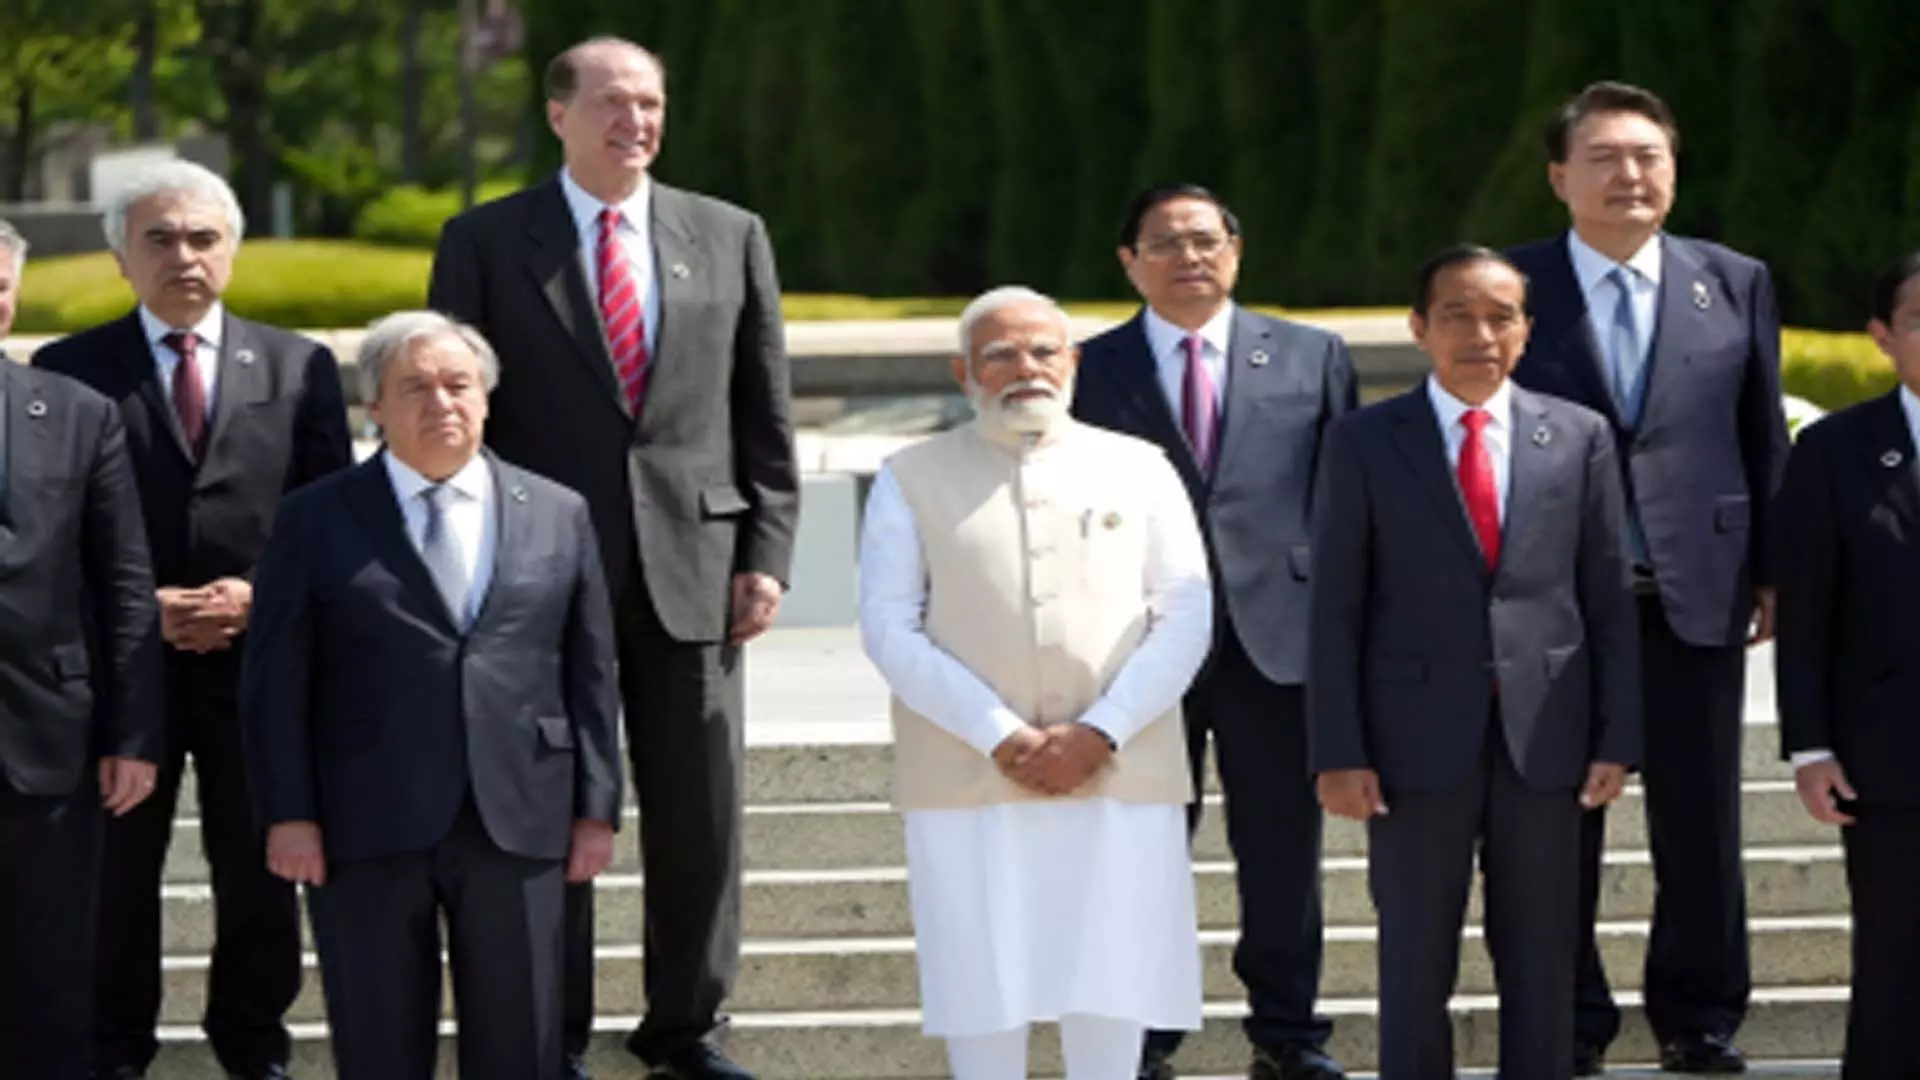 Delhi News: प्रधानमंत्री मोदी इटली में जी-7 शिखर सम्मेलन के दौरान कई द्विपक्षीय बैठकें करेंगे